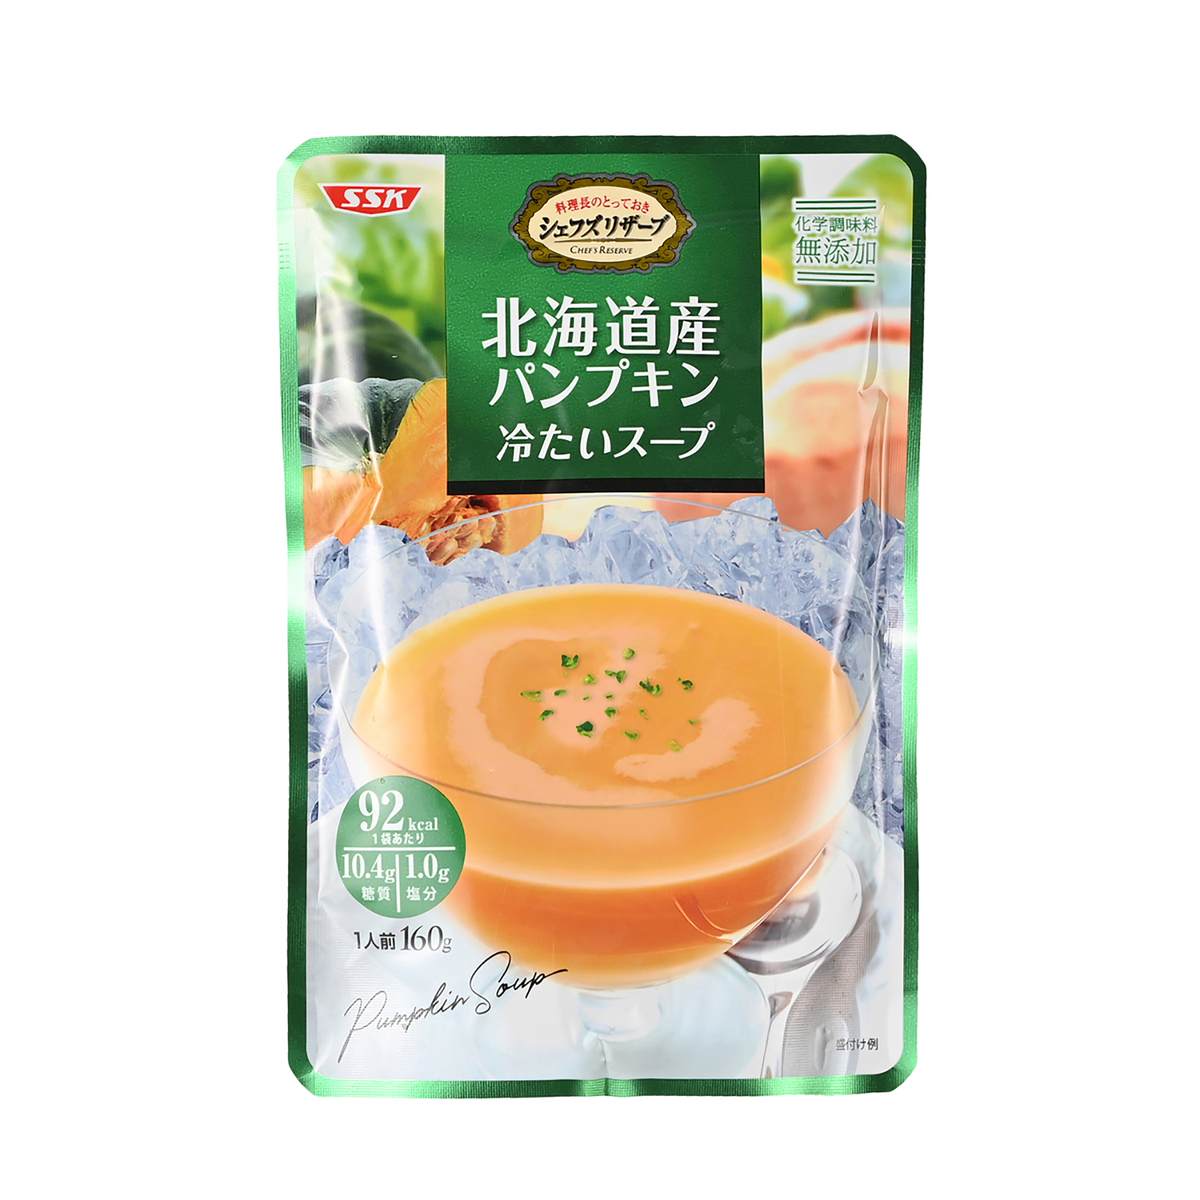 売れ筋新商品 シェフズリザーブ プレミアム イタリア産赤パプリカ冷たいスープ 2袋 清水食品